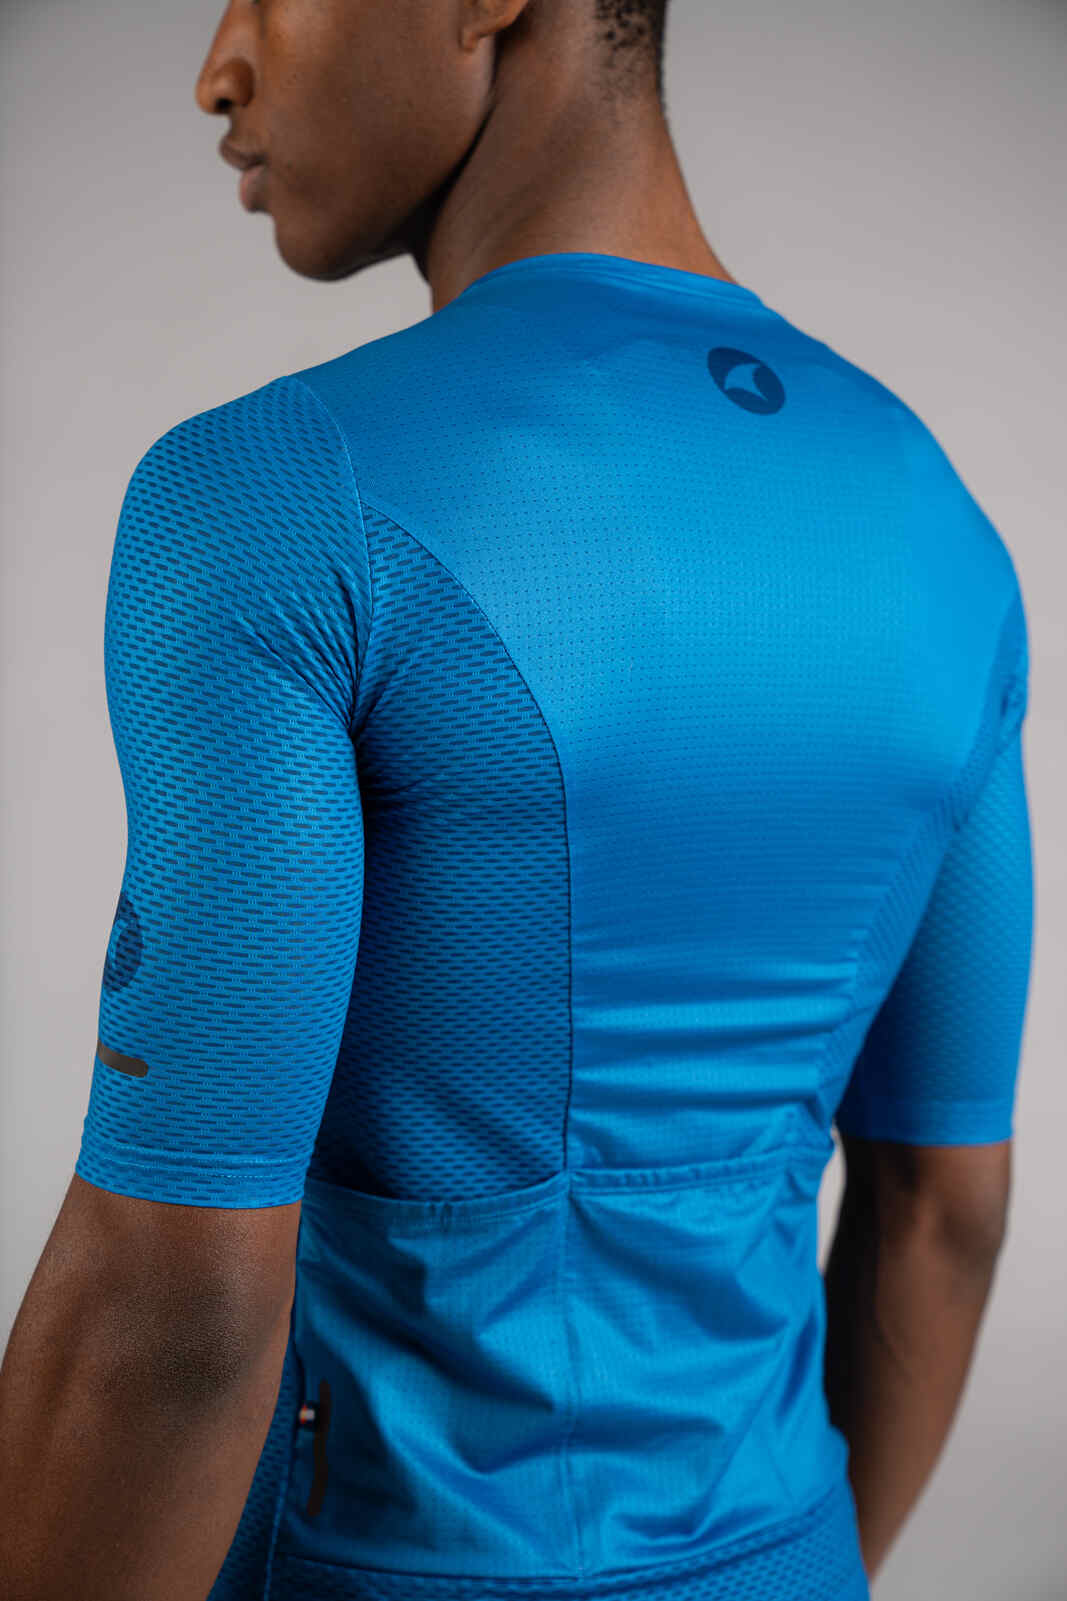 Men's Blue Mesh Cycling Jersey - Mesh Fabric Close-Up